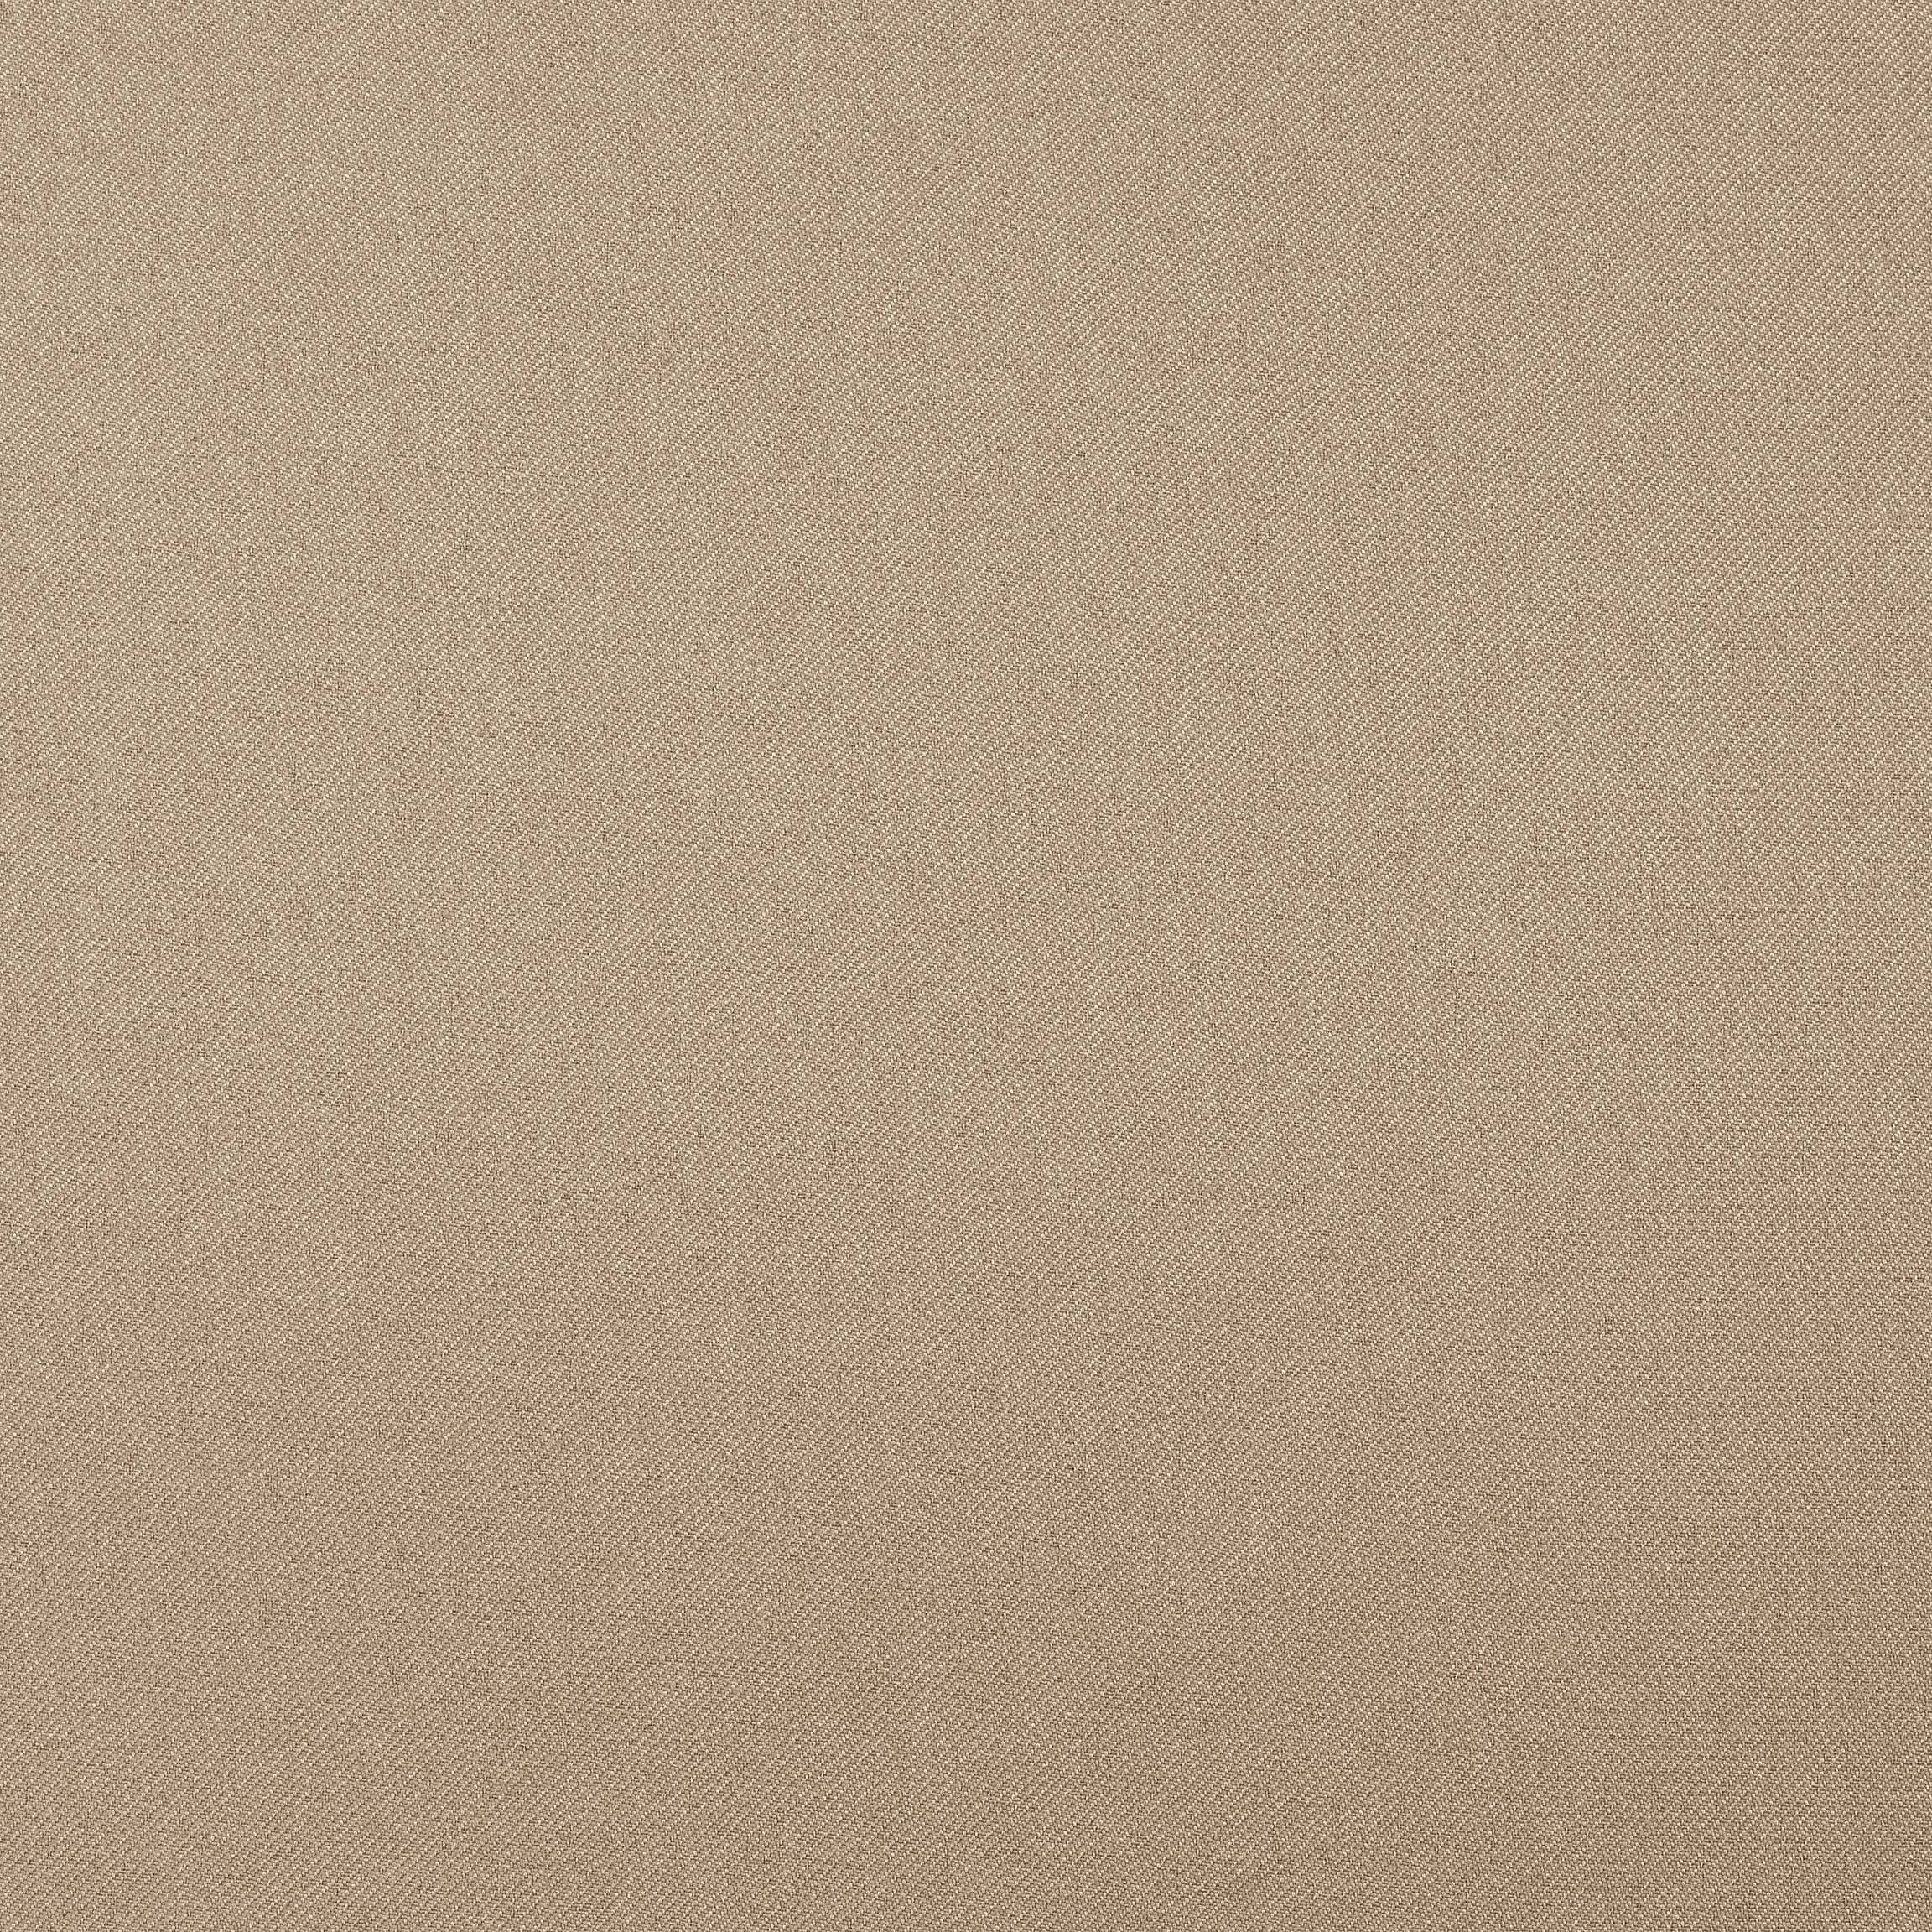  Портьерная ткань SETO BEIGE, ширина 280 см  - Фото